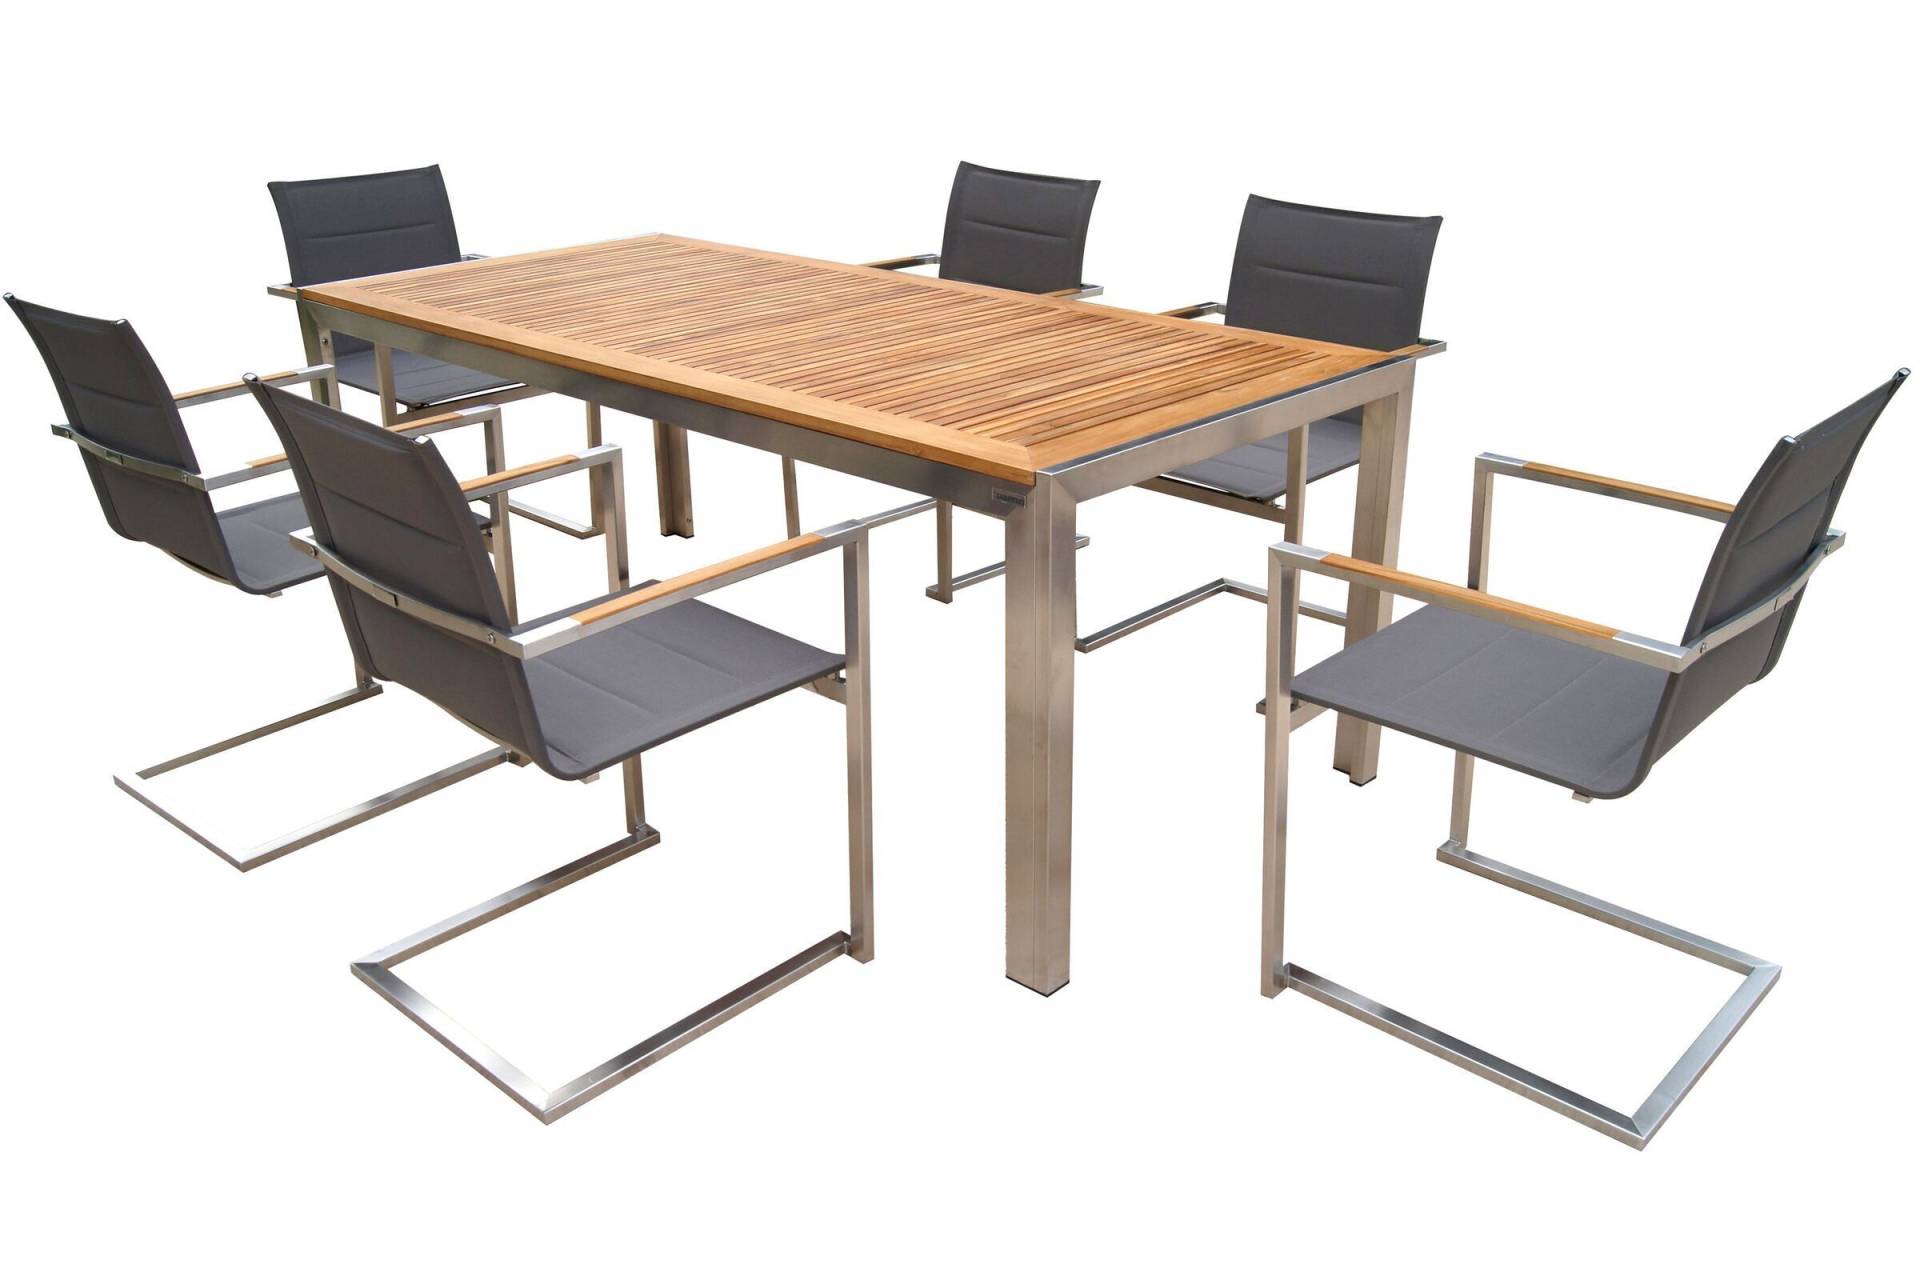 OUTFLEXX Sitzgruppe, taupe, Edelstahl/Teak, Esstisch 200 x 90 cm, 6 Stapelstühle gepolstert von OUTFLEXX